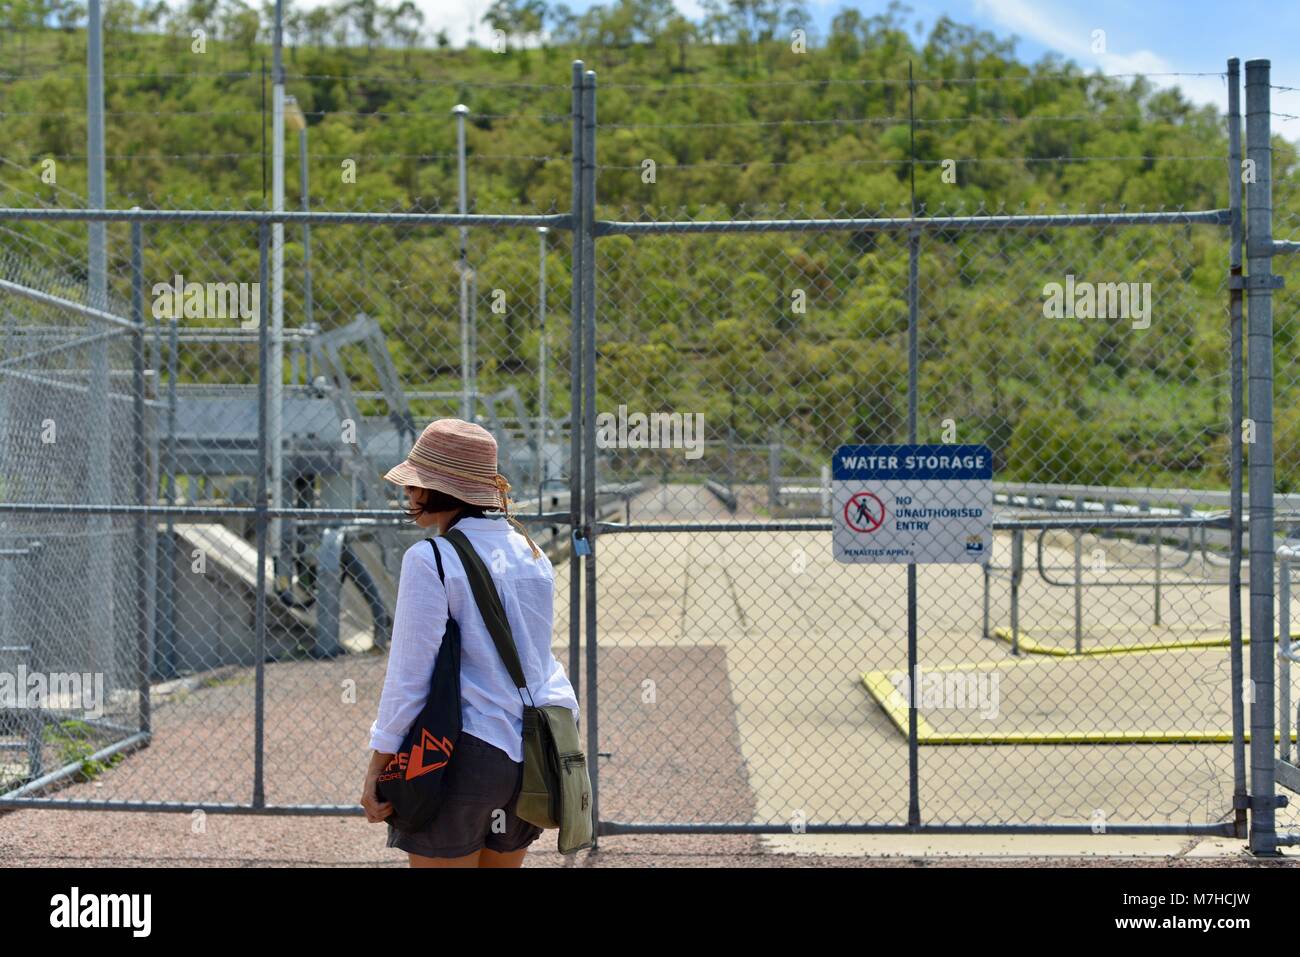 Membro del pubblico a piedi passato acqua deposito nessun ingresso non autorizzato le sanzioni si applicano firmato area, Ross diga sul fiume, Kelso QLD, Australia Foto Stock